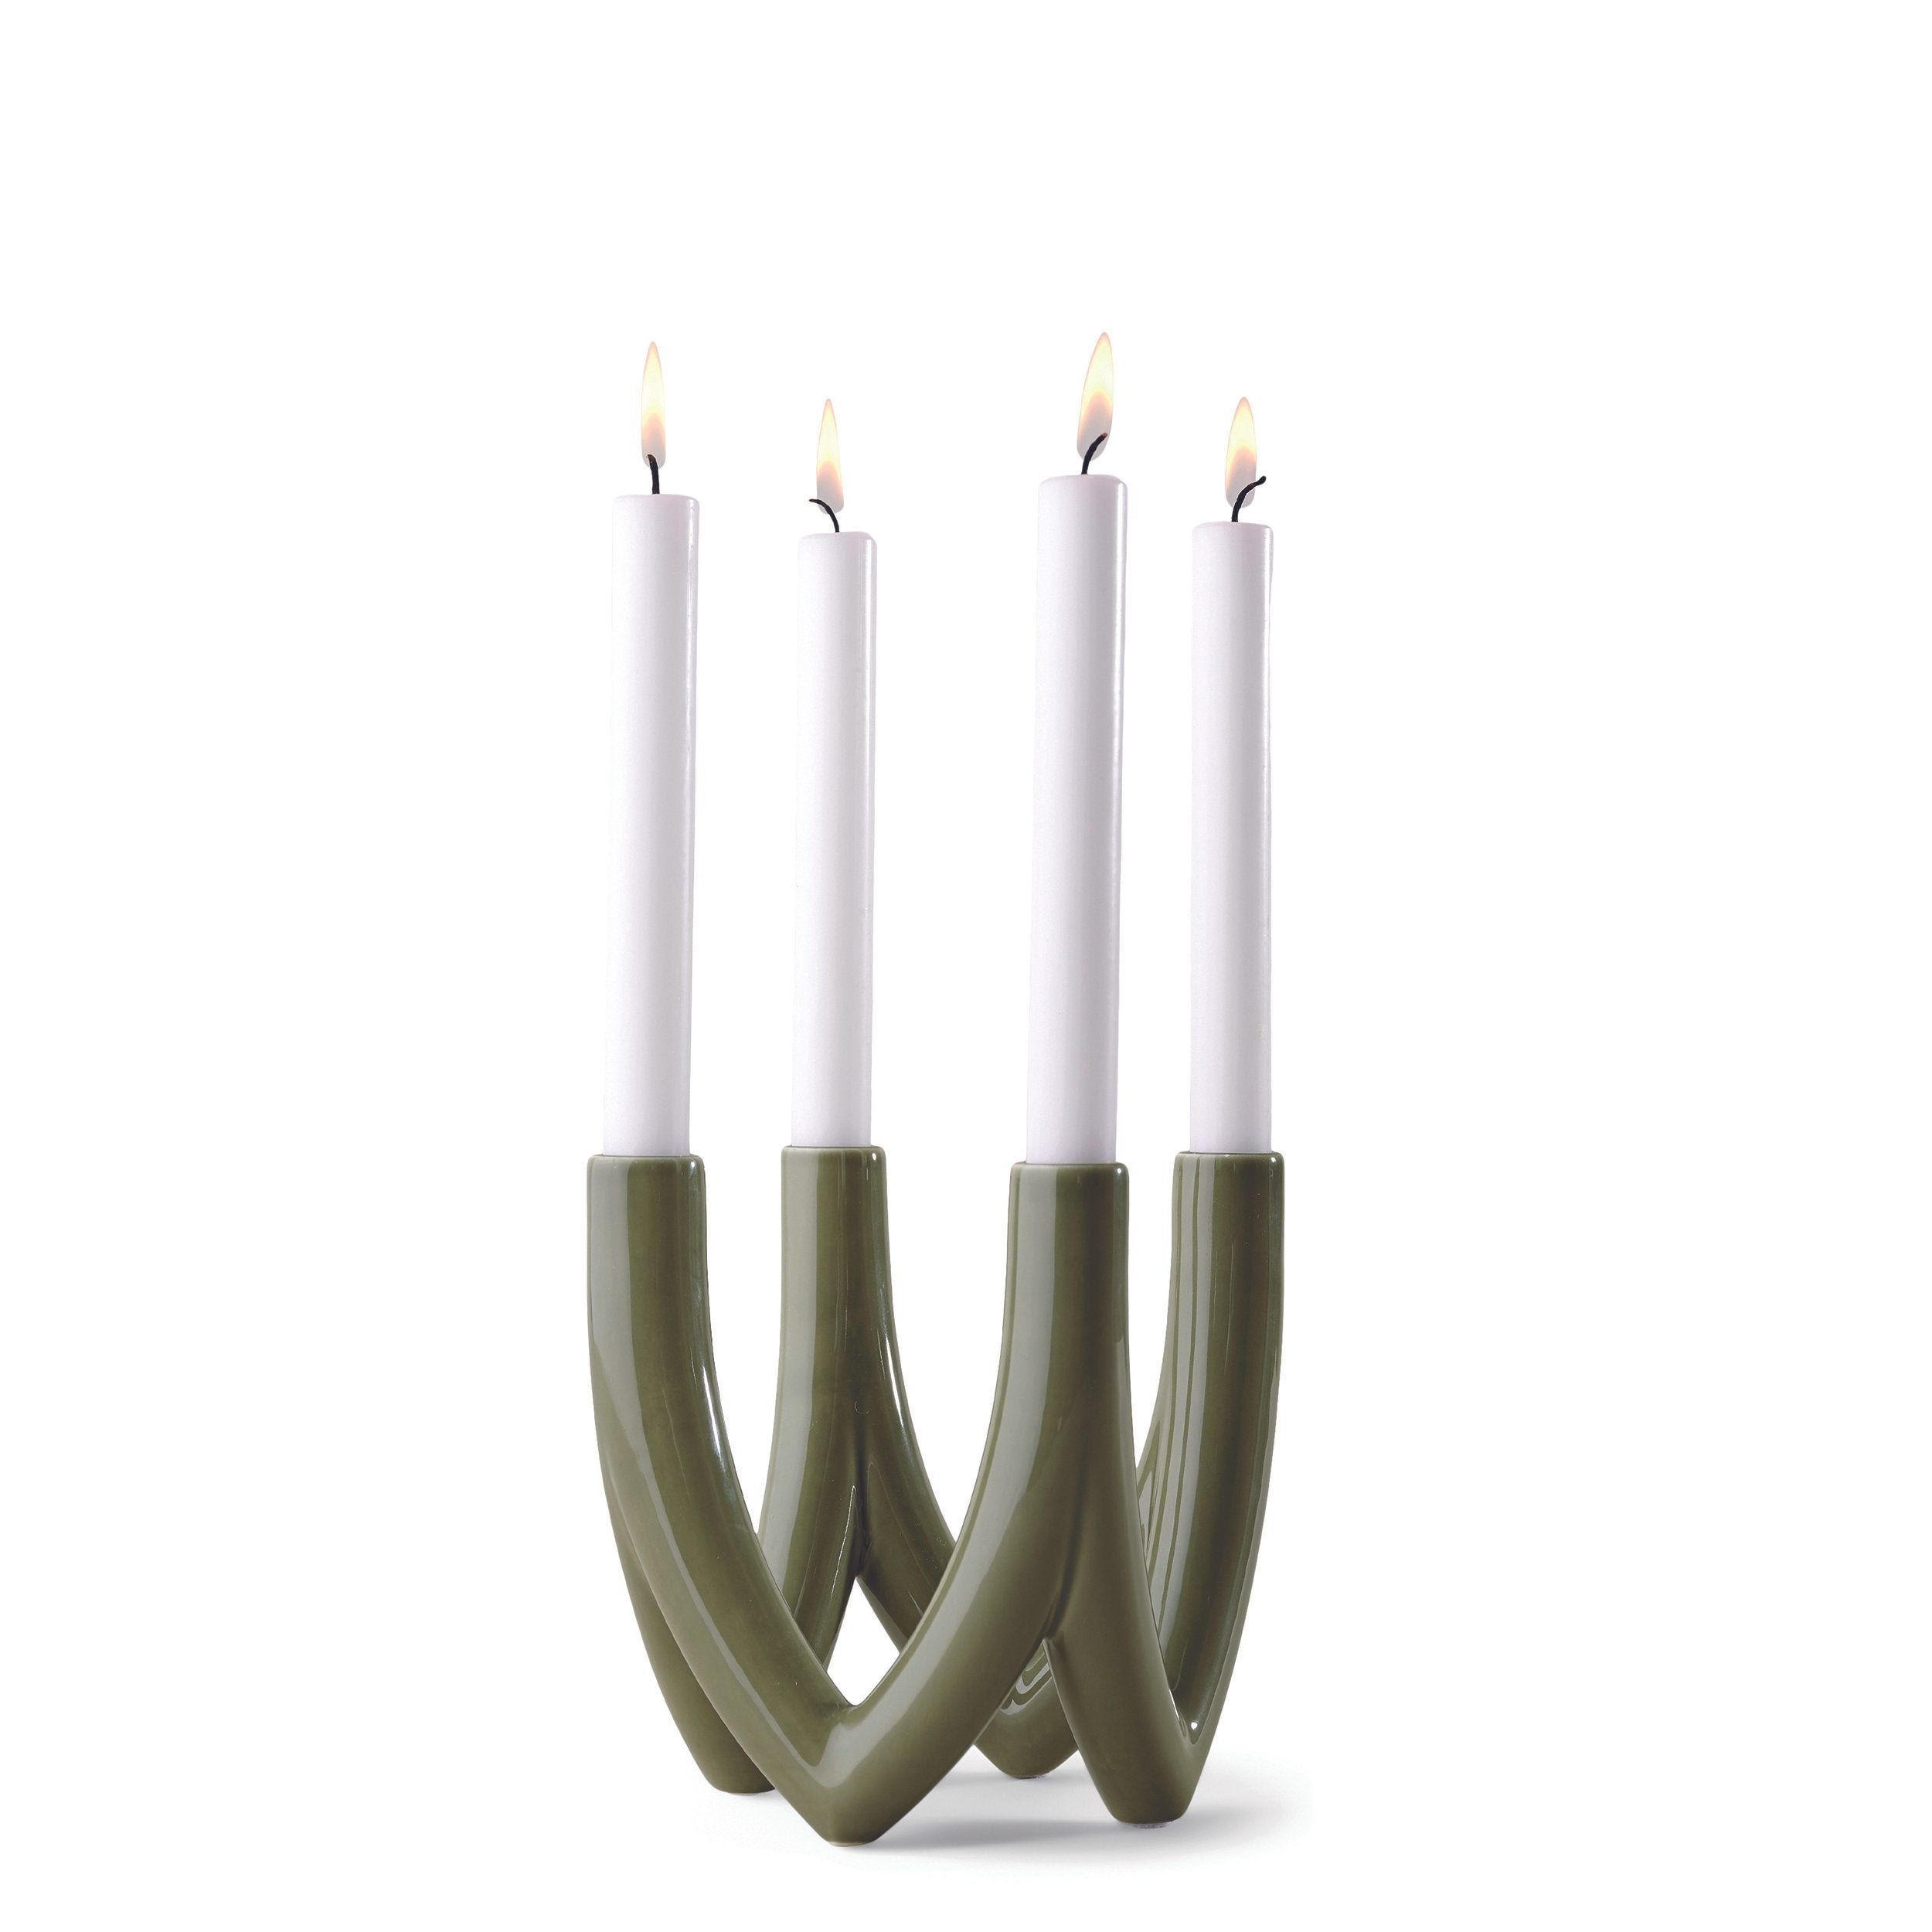 Ro Collection Candleur de lustre avec 4 bras, Olive Green